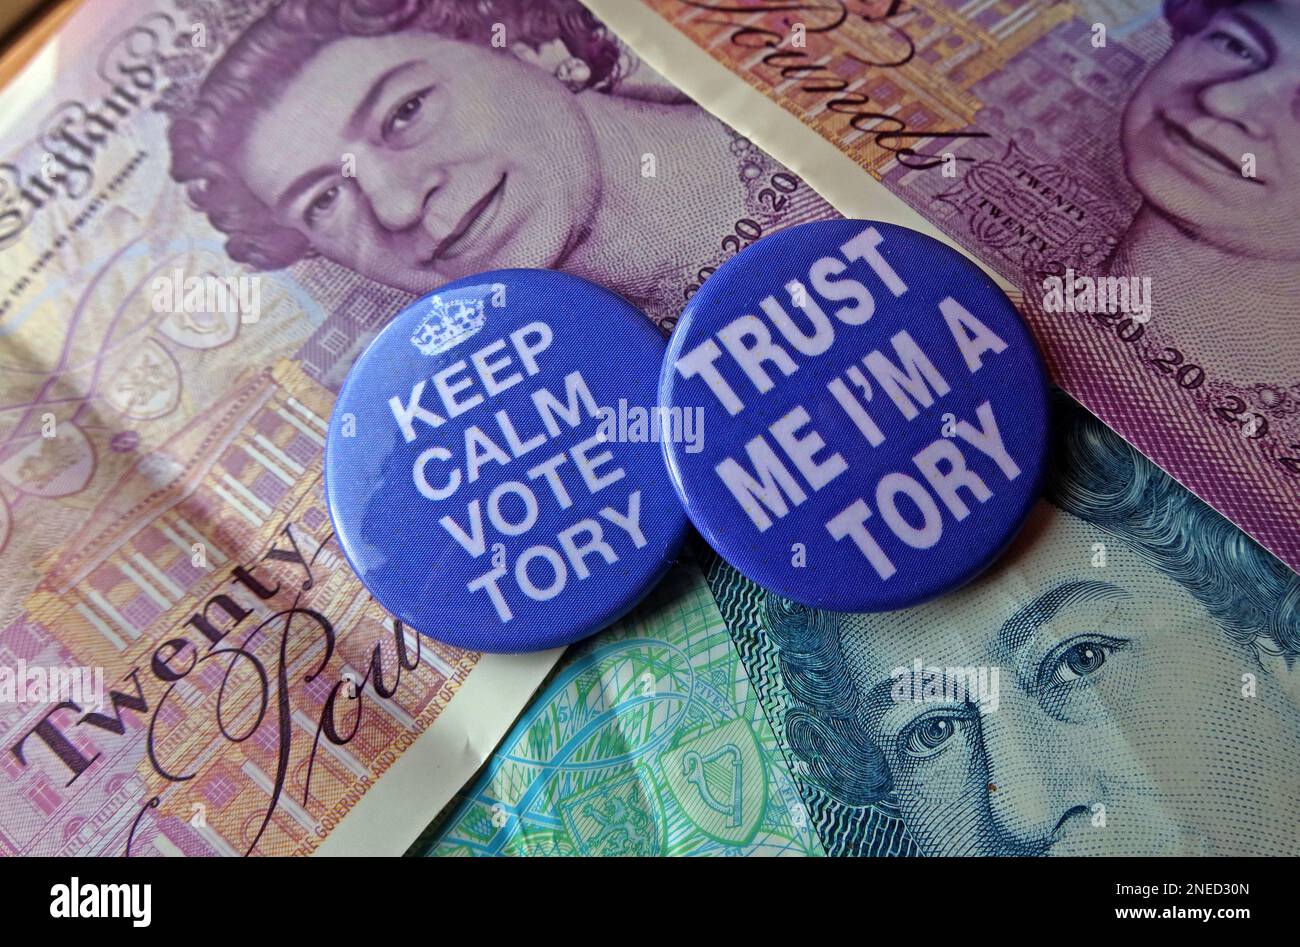 Sono un Tory - in Inghilterra/Galles, qualcuno si baserà ancora sul voto Tory, sulla base del record economico/finanziario pista? Foto Stock